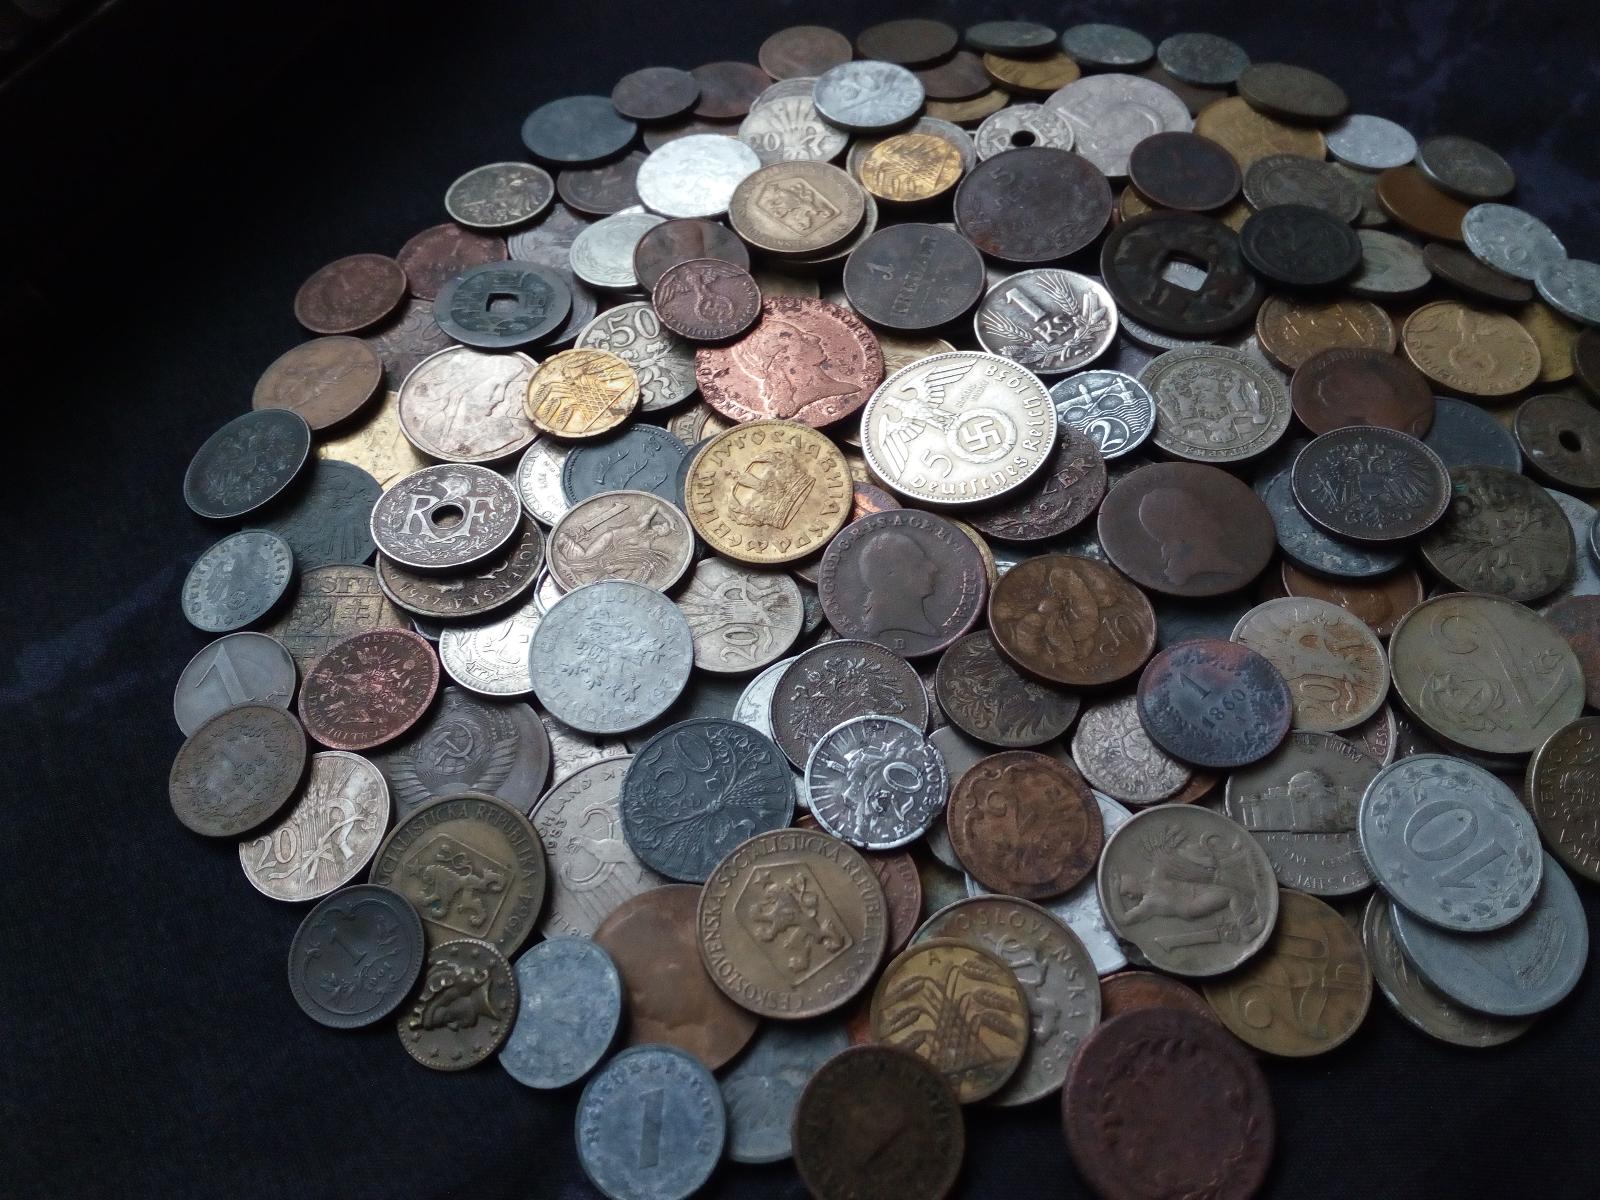 Drevena truhlicka plna starych nalezovych minci - Sběratelství